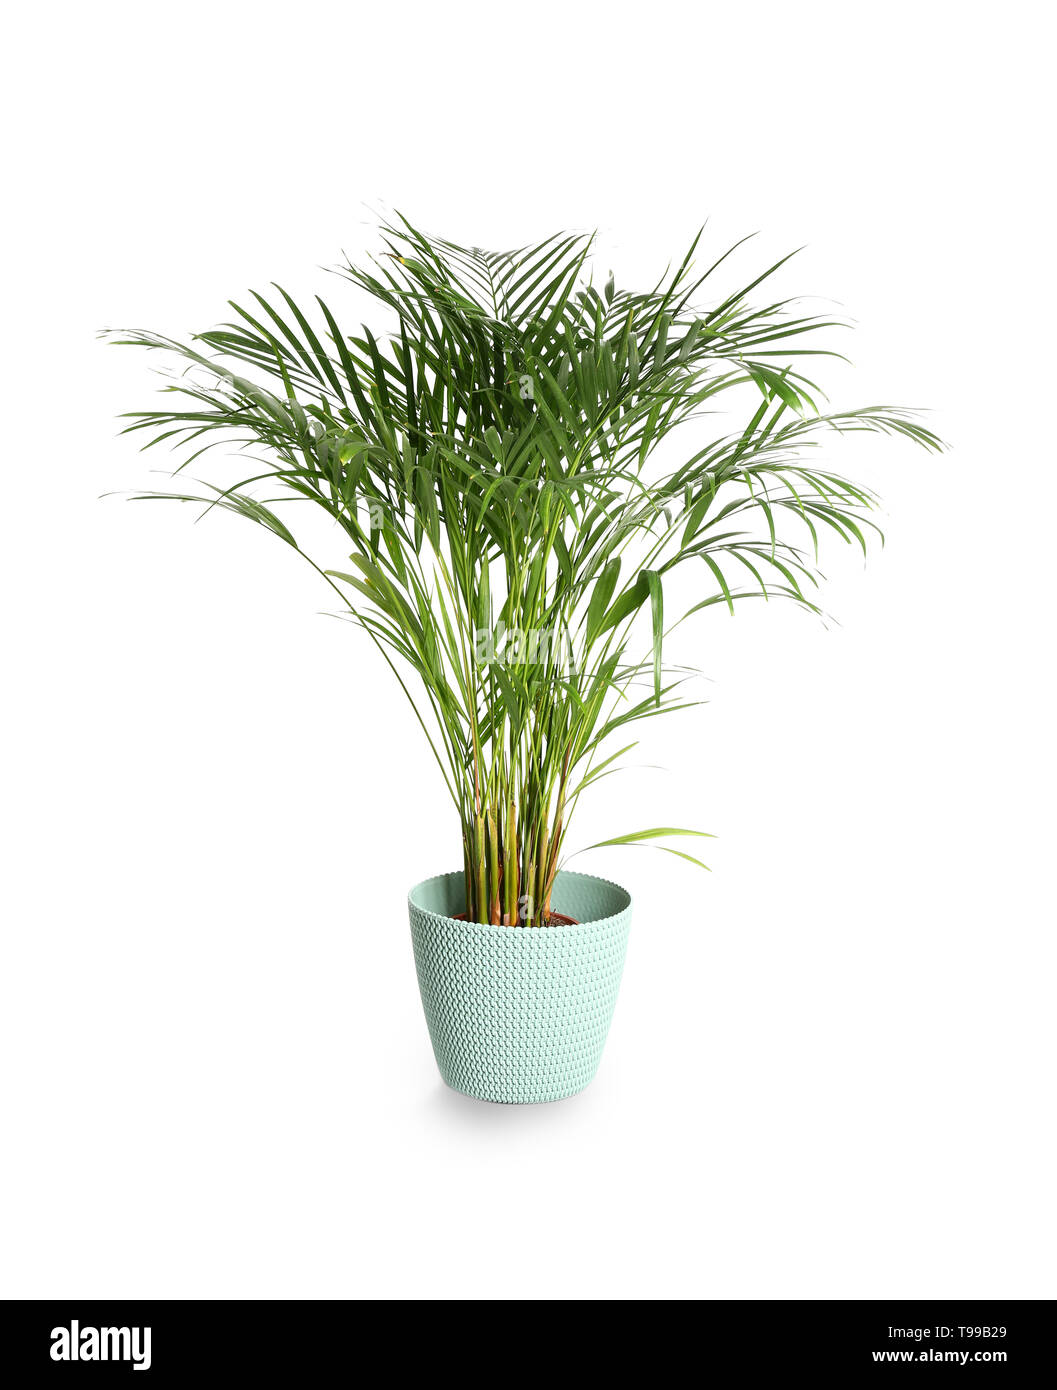 Decorative Areca palm on white background Stock Photo